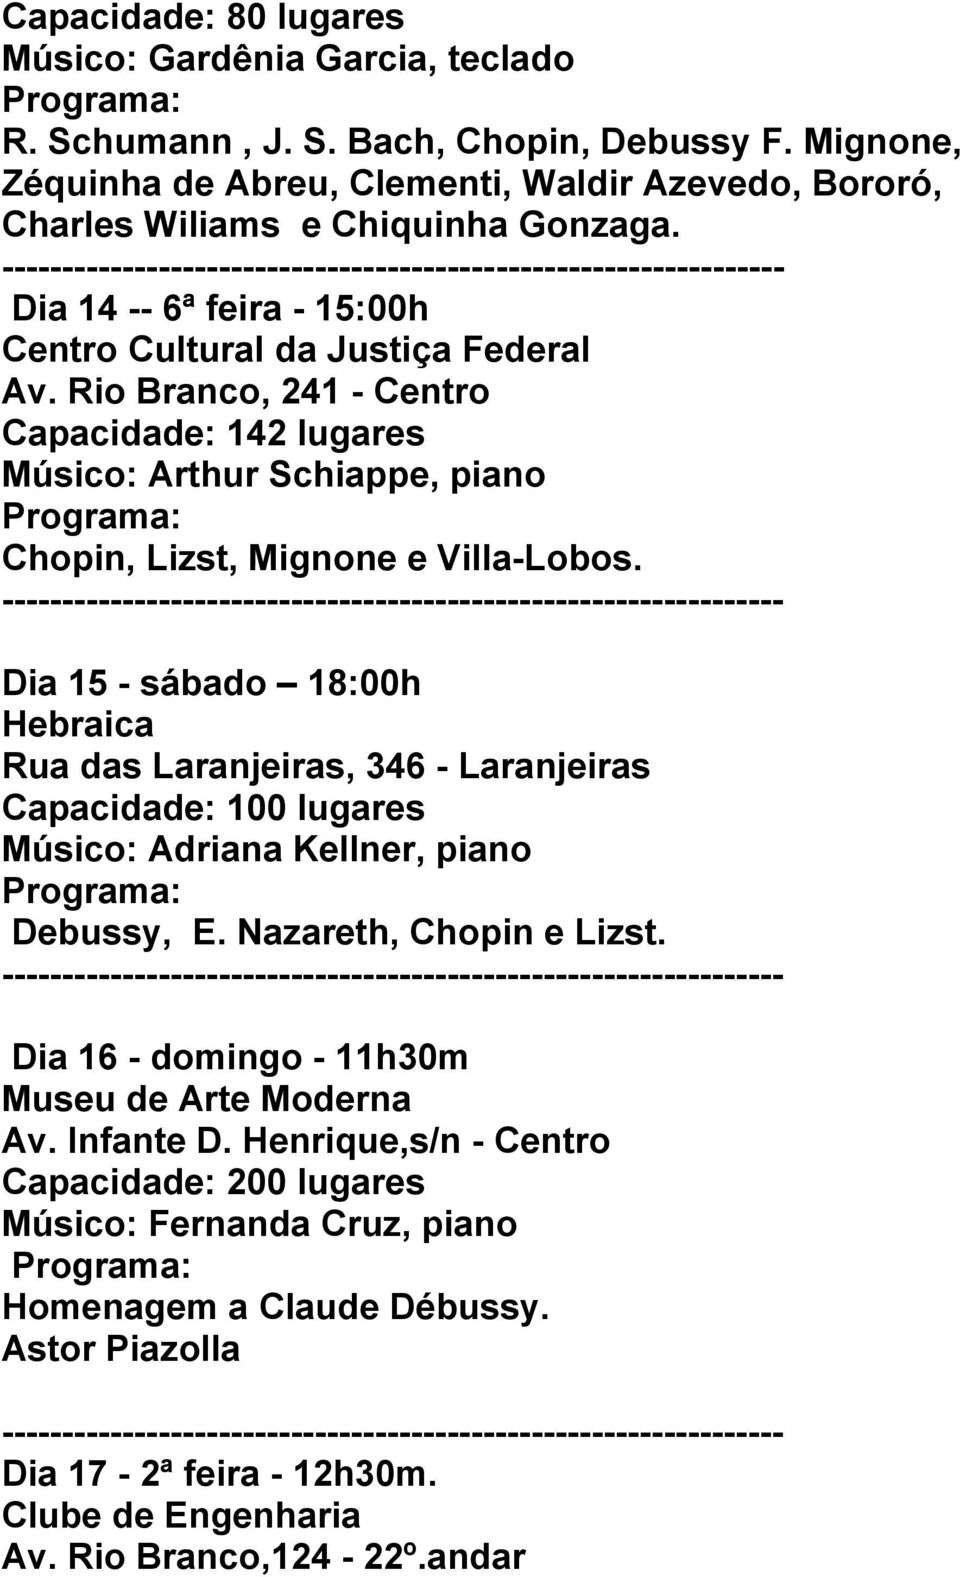 Rio Branco, 241 - Centro Capacidade: 142 lugares Músico: Arthur Schiappe, piano Chopin, Lizst, Mignone e Villa-Lobos.